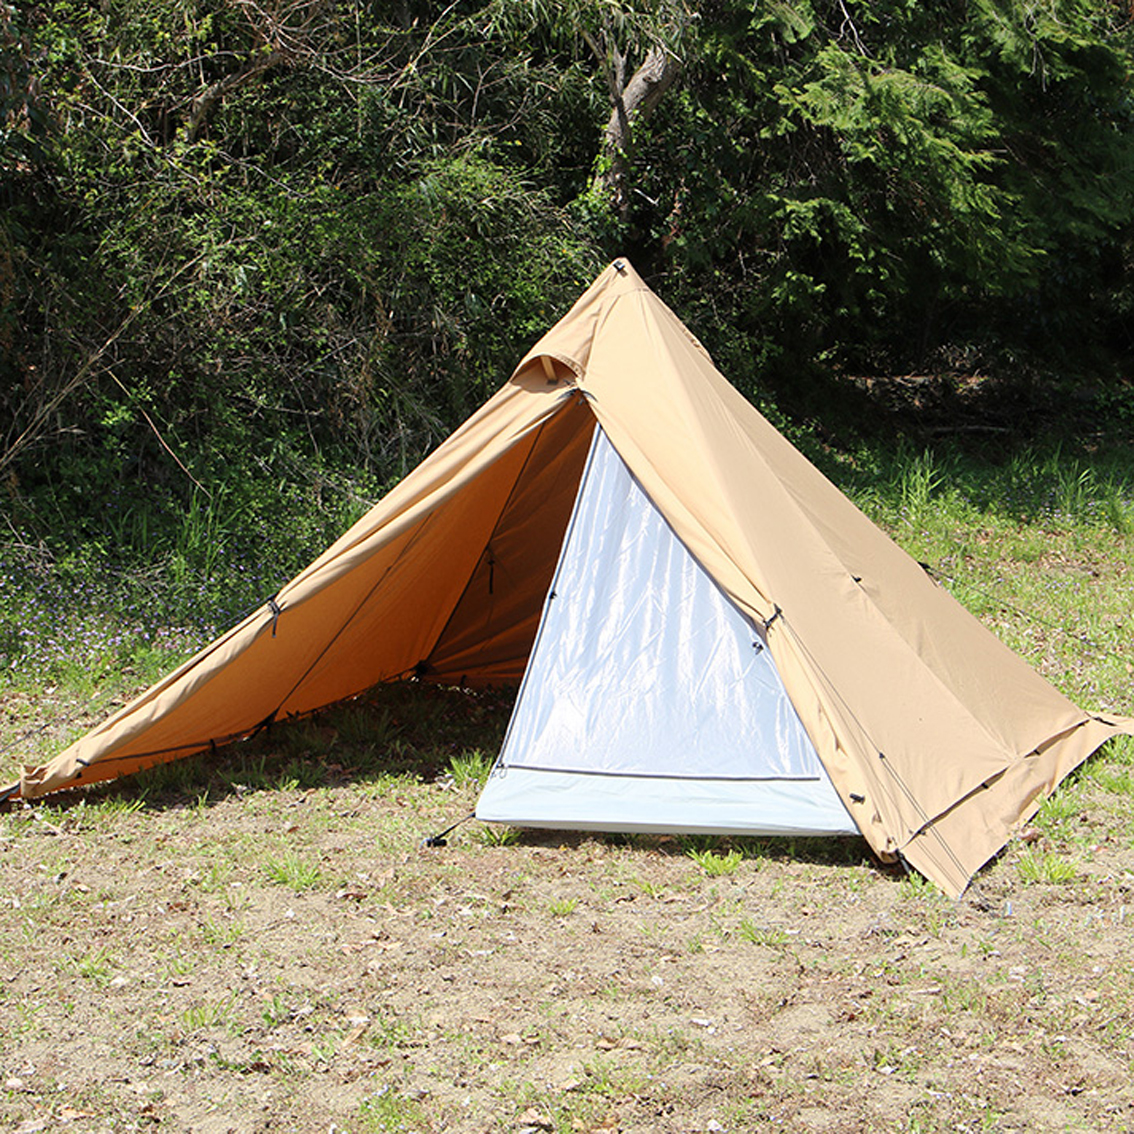 tent-Mark DESIGNS パンダ TC+: キャンプ トレッキングギア WILD-1 